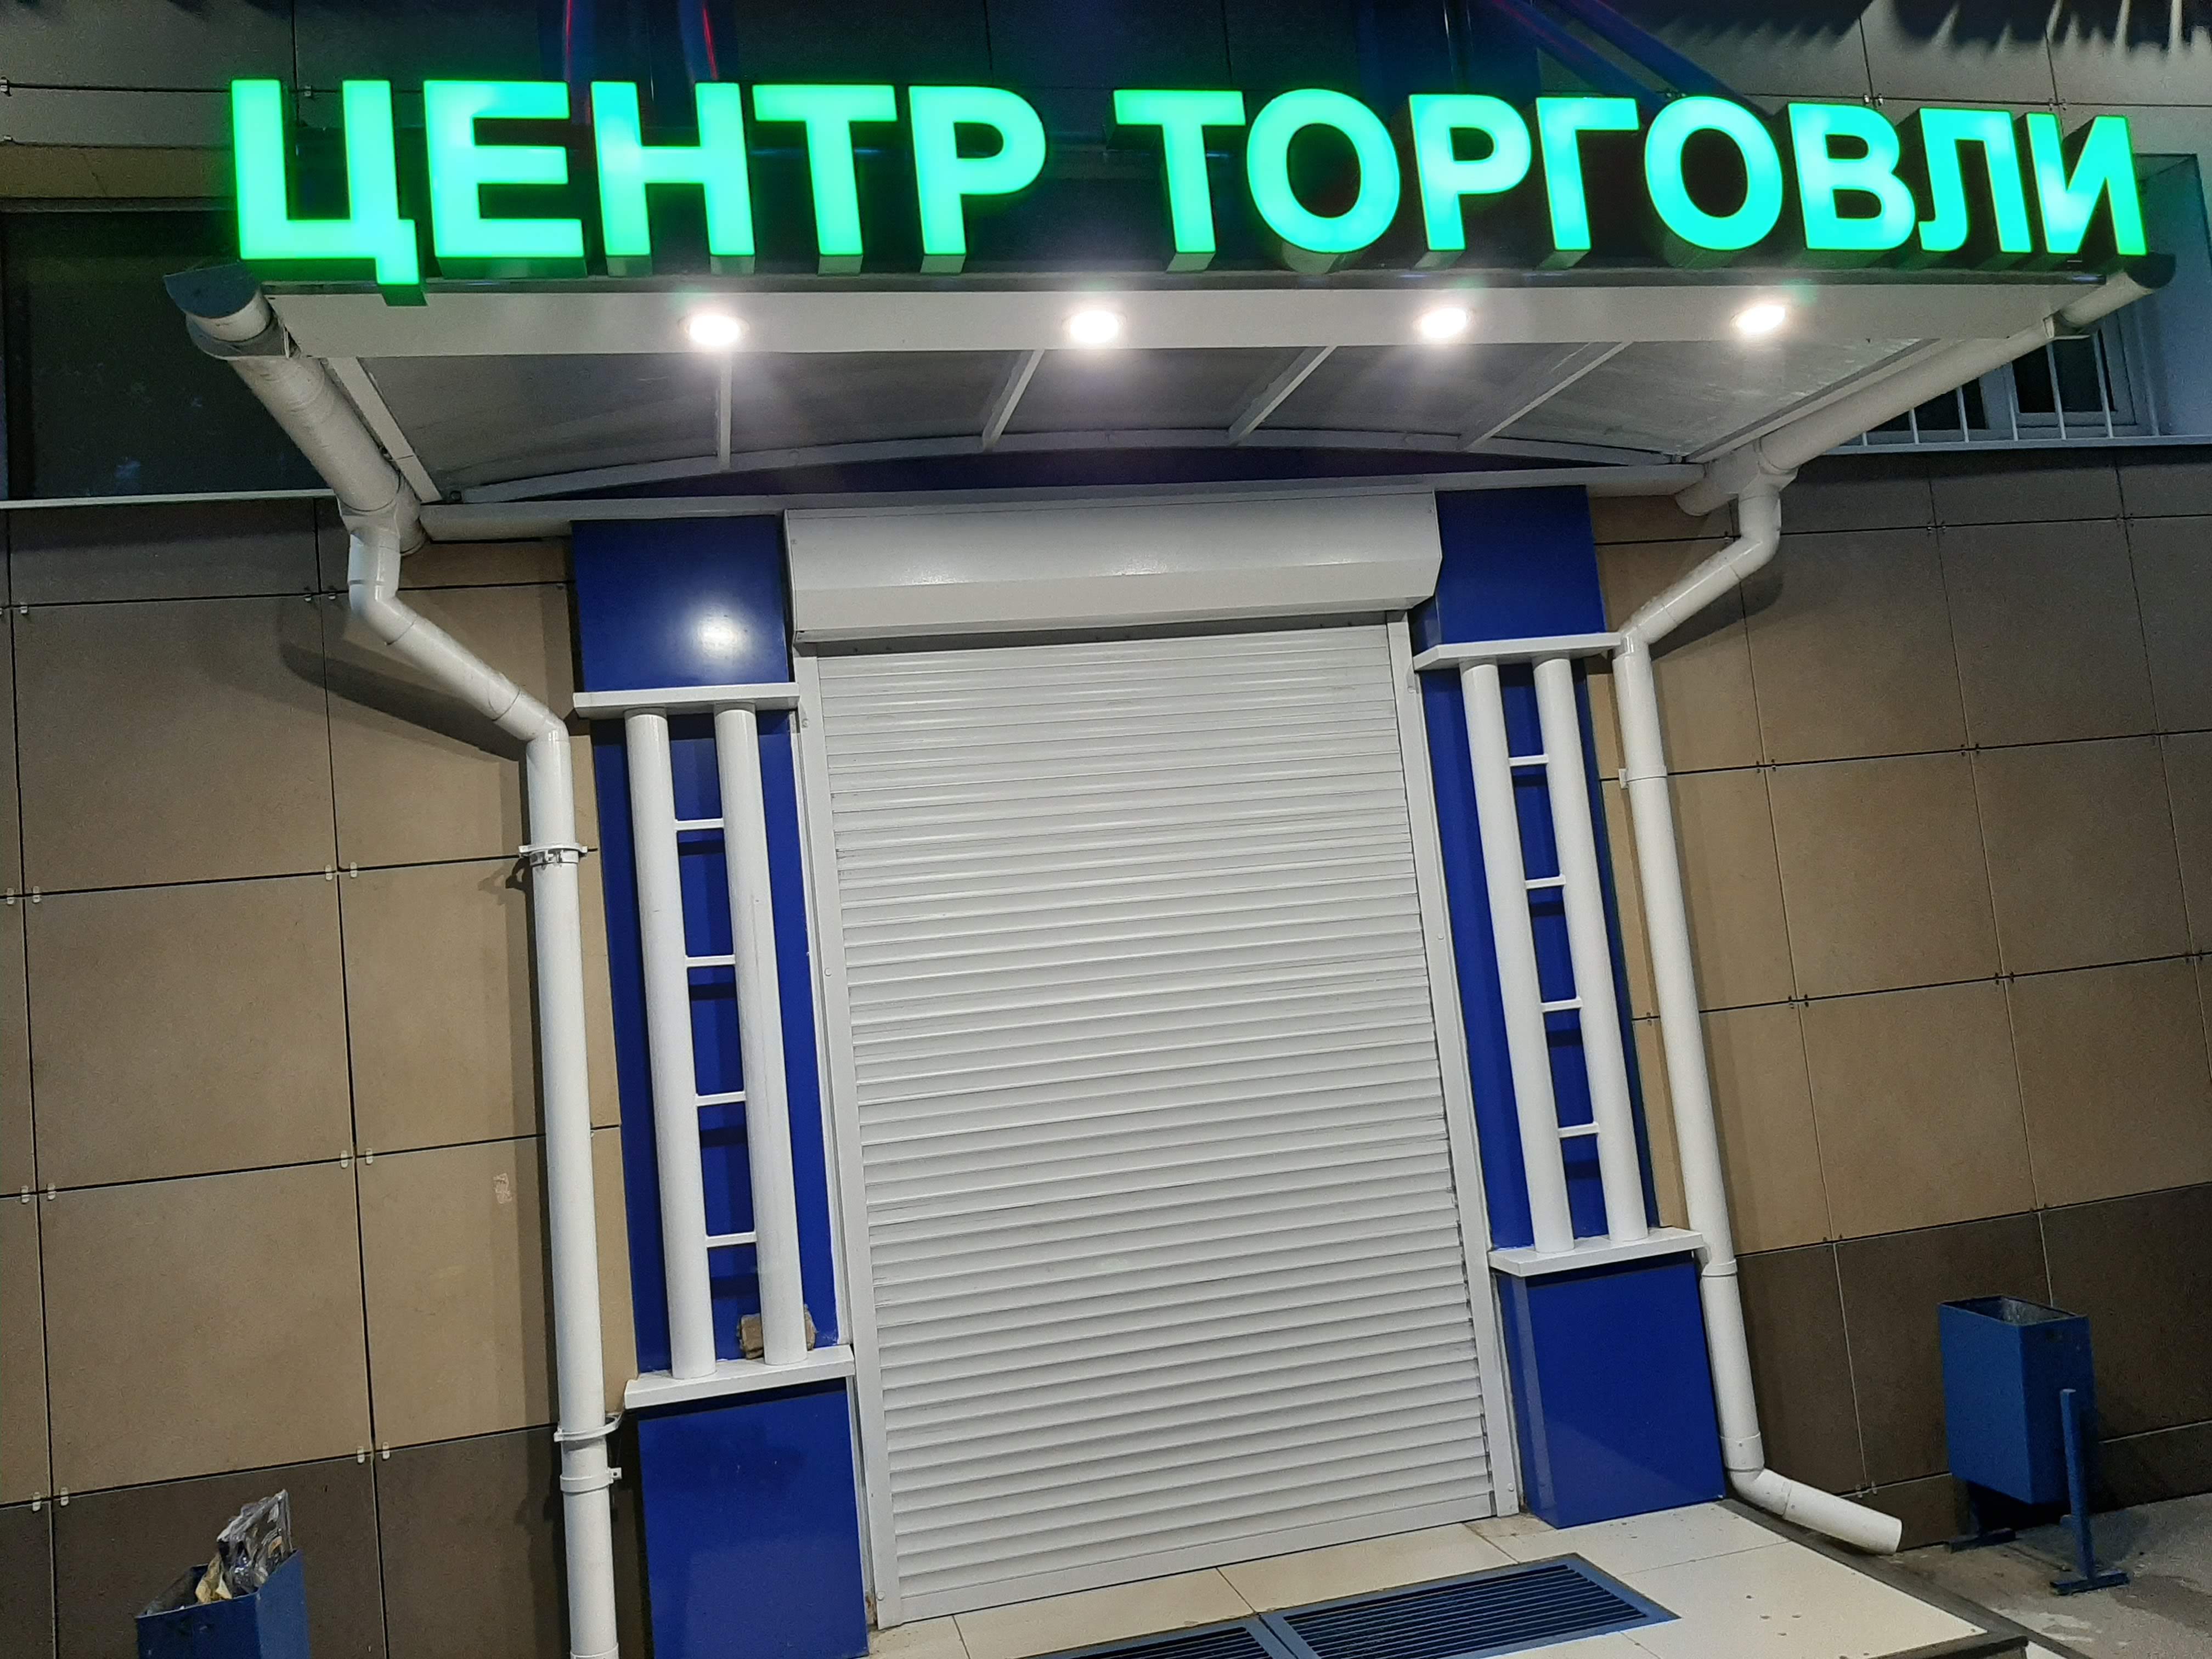 Объемные буквы с лицевой подсветкой для торгового центра. 10 дней, цена от 55 рублей